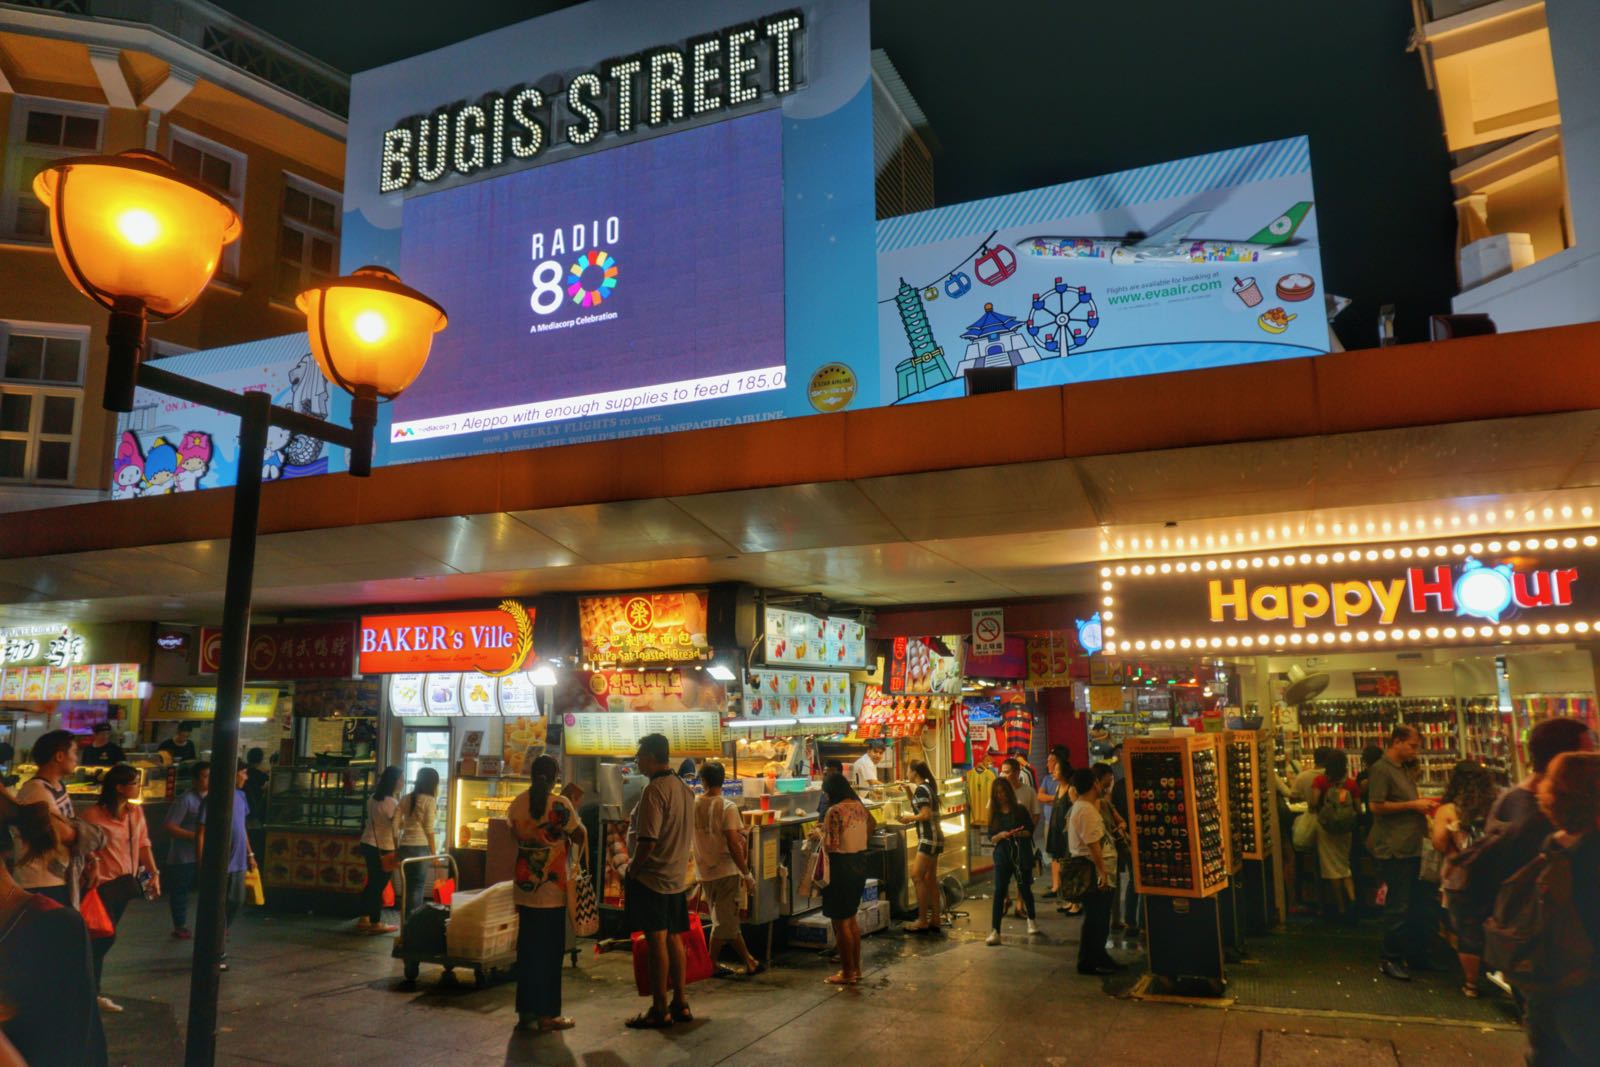 Belanja Murah di Bugis Street, Singapore - PergiDulu.com